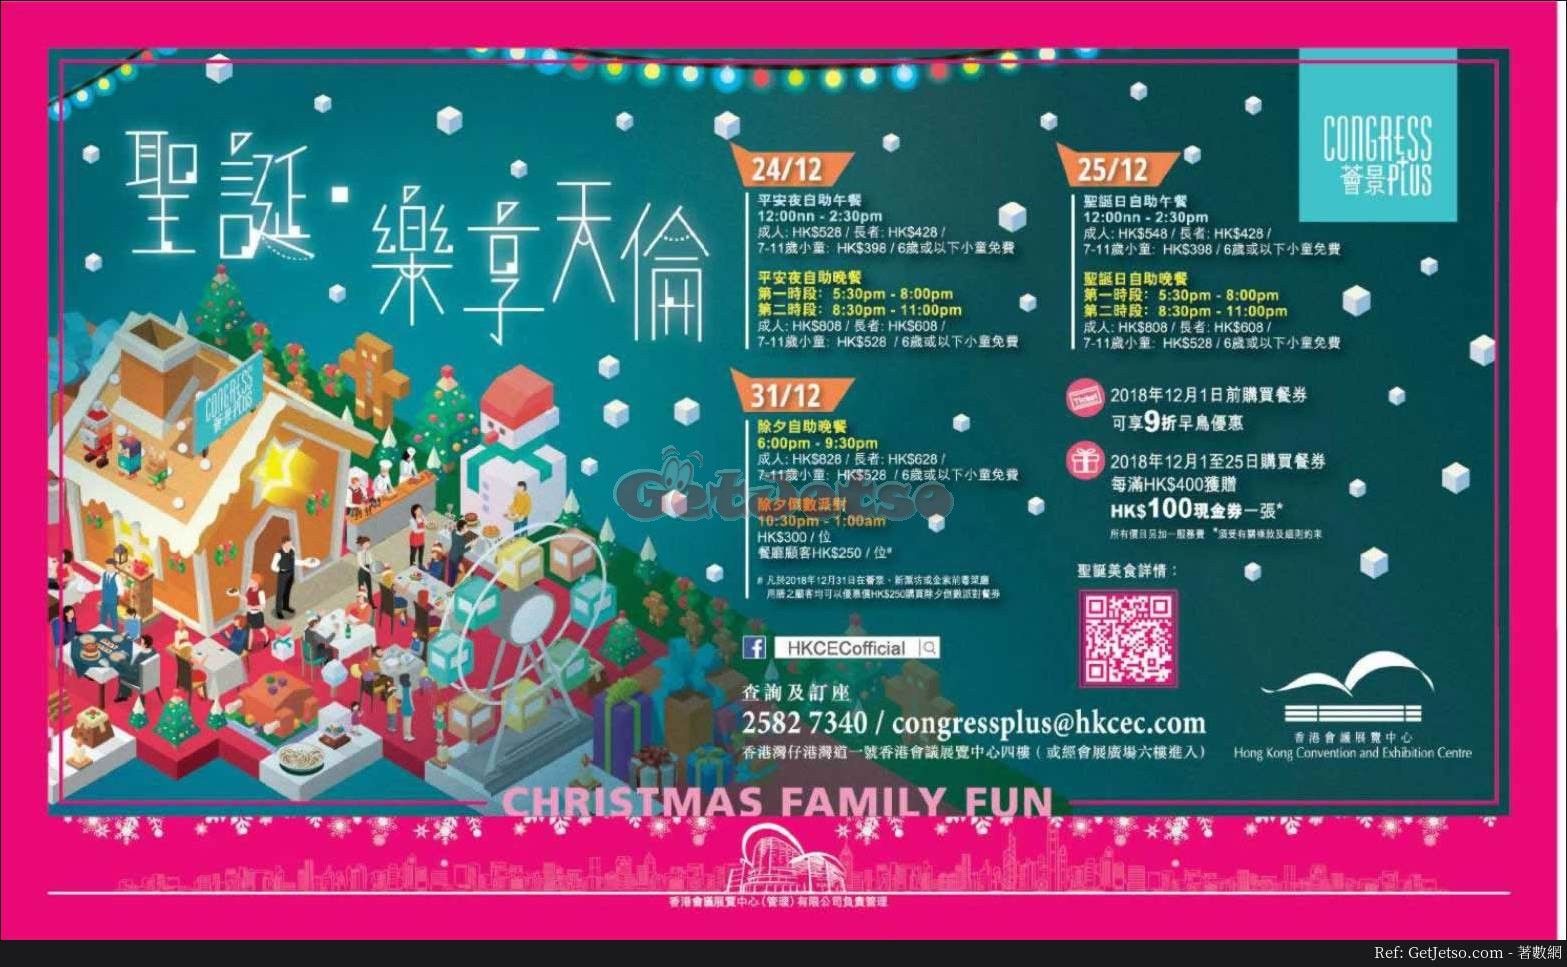 香港會議展覽中心薈景9折聖誕自助餐預訂優惠(至18年12月1日)圖片1